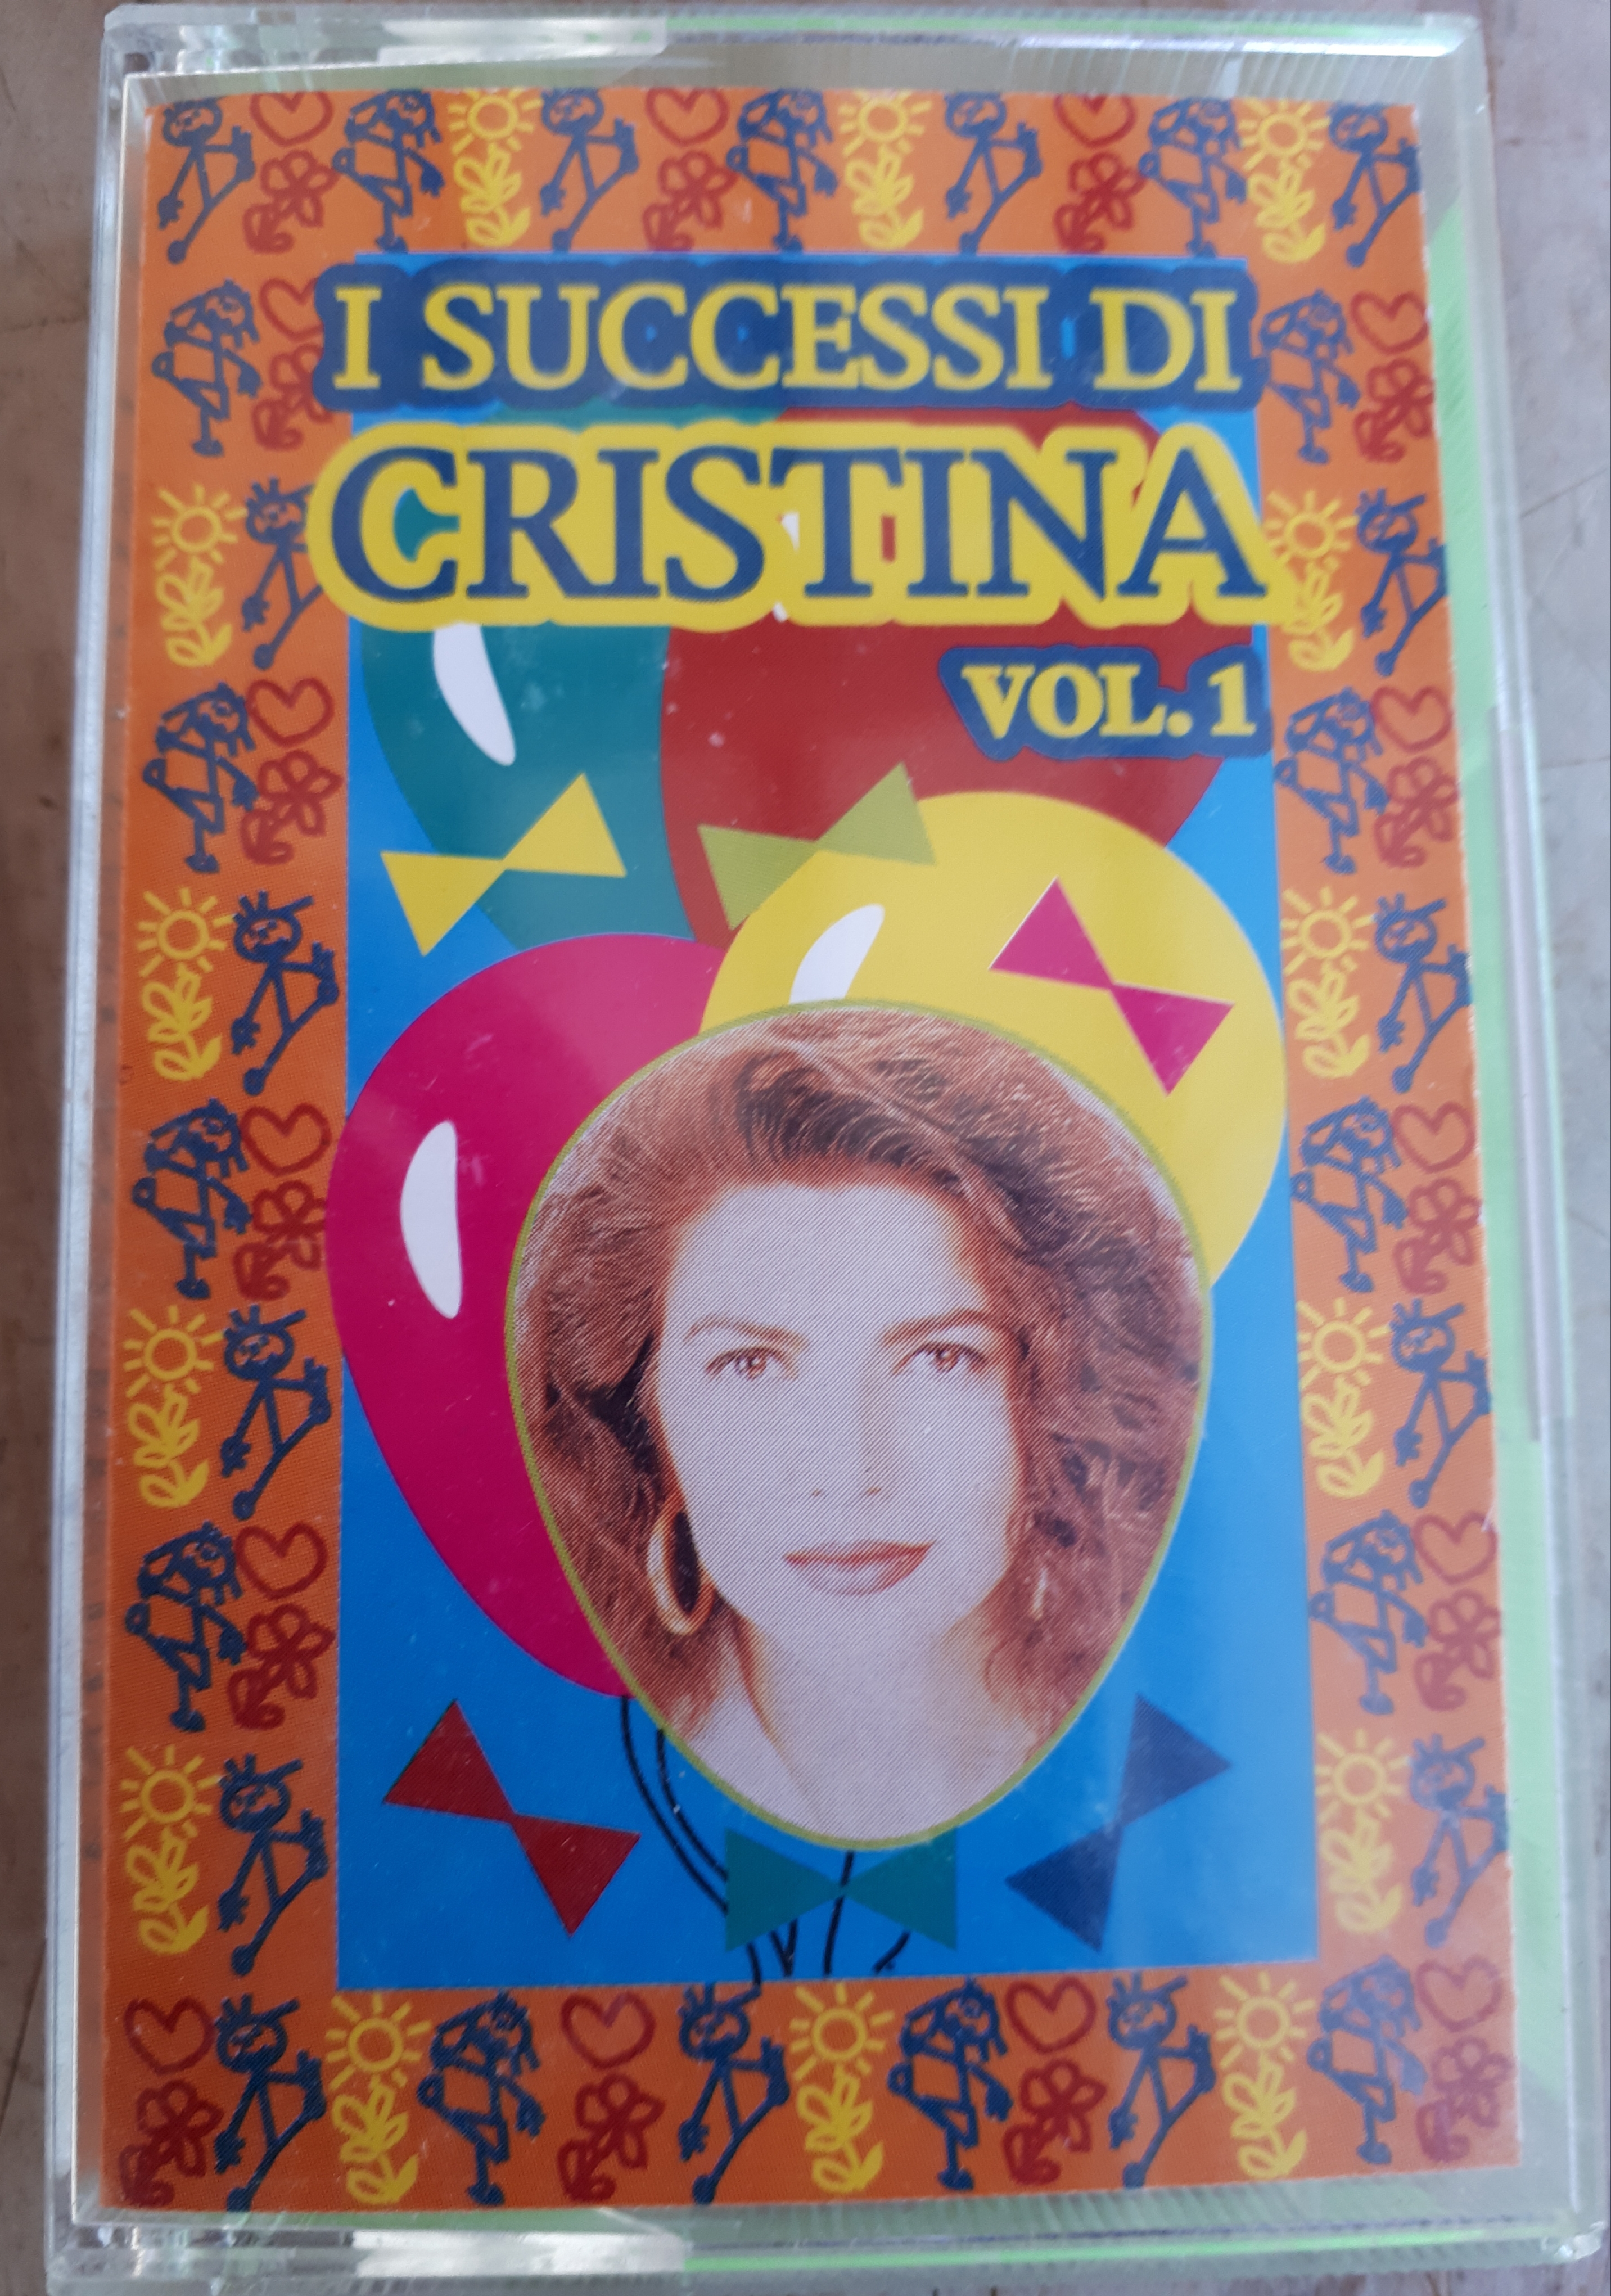 Cristina D'Avena - I successi di Cristina vol. 1